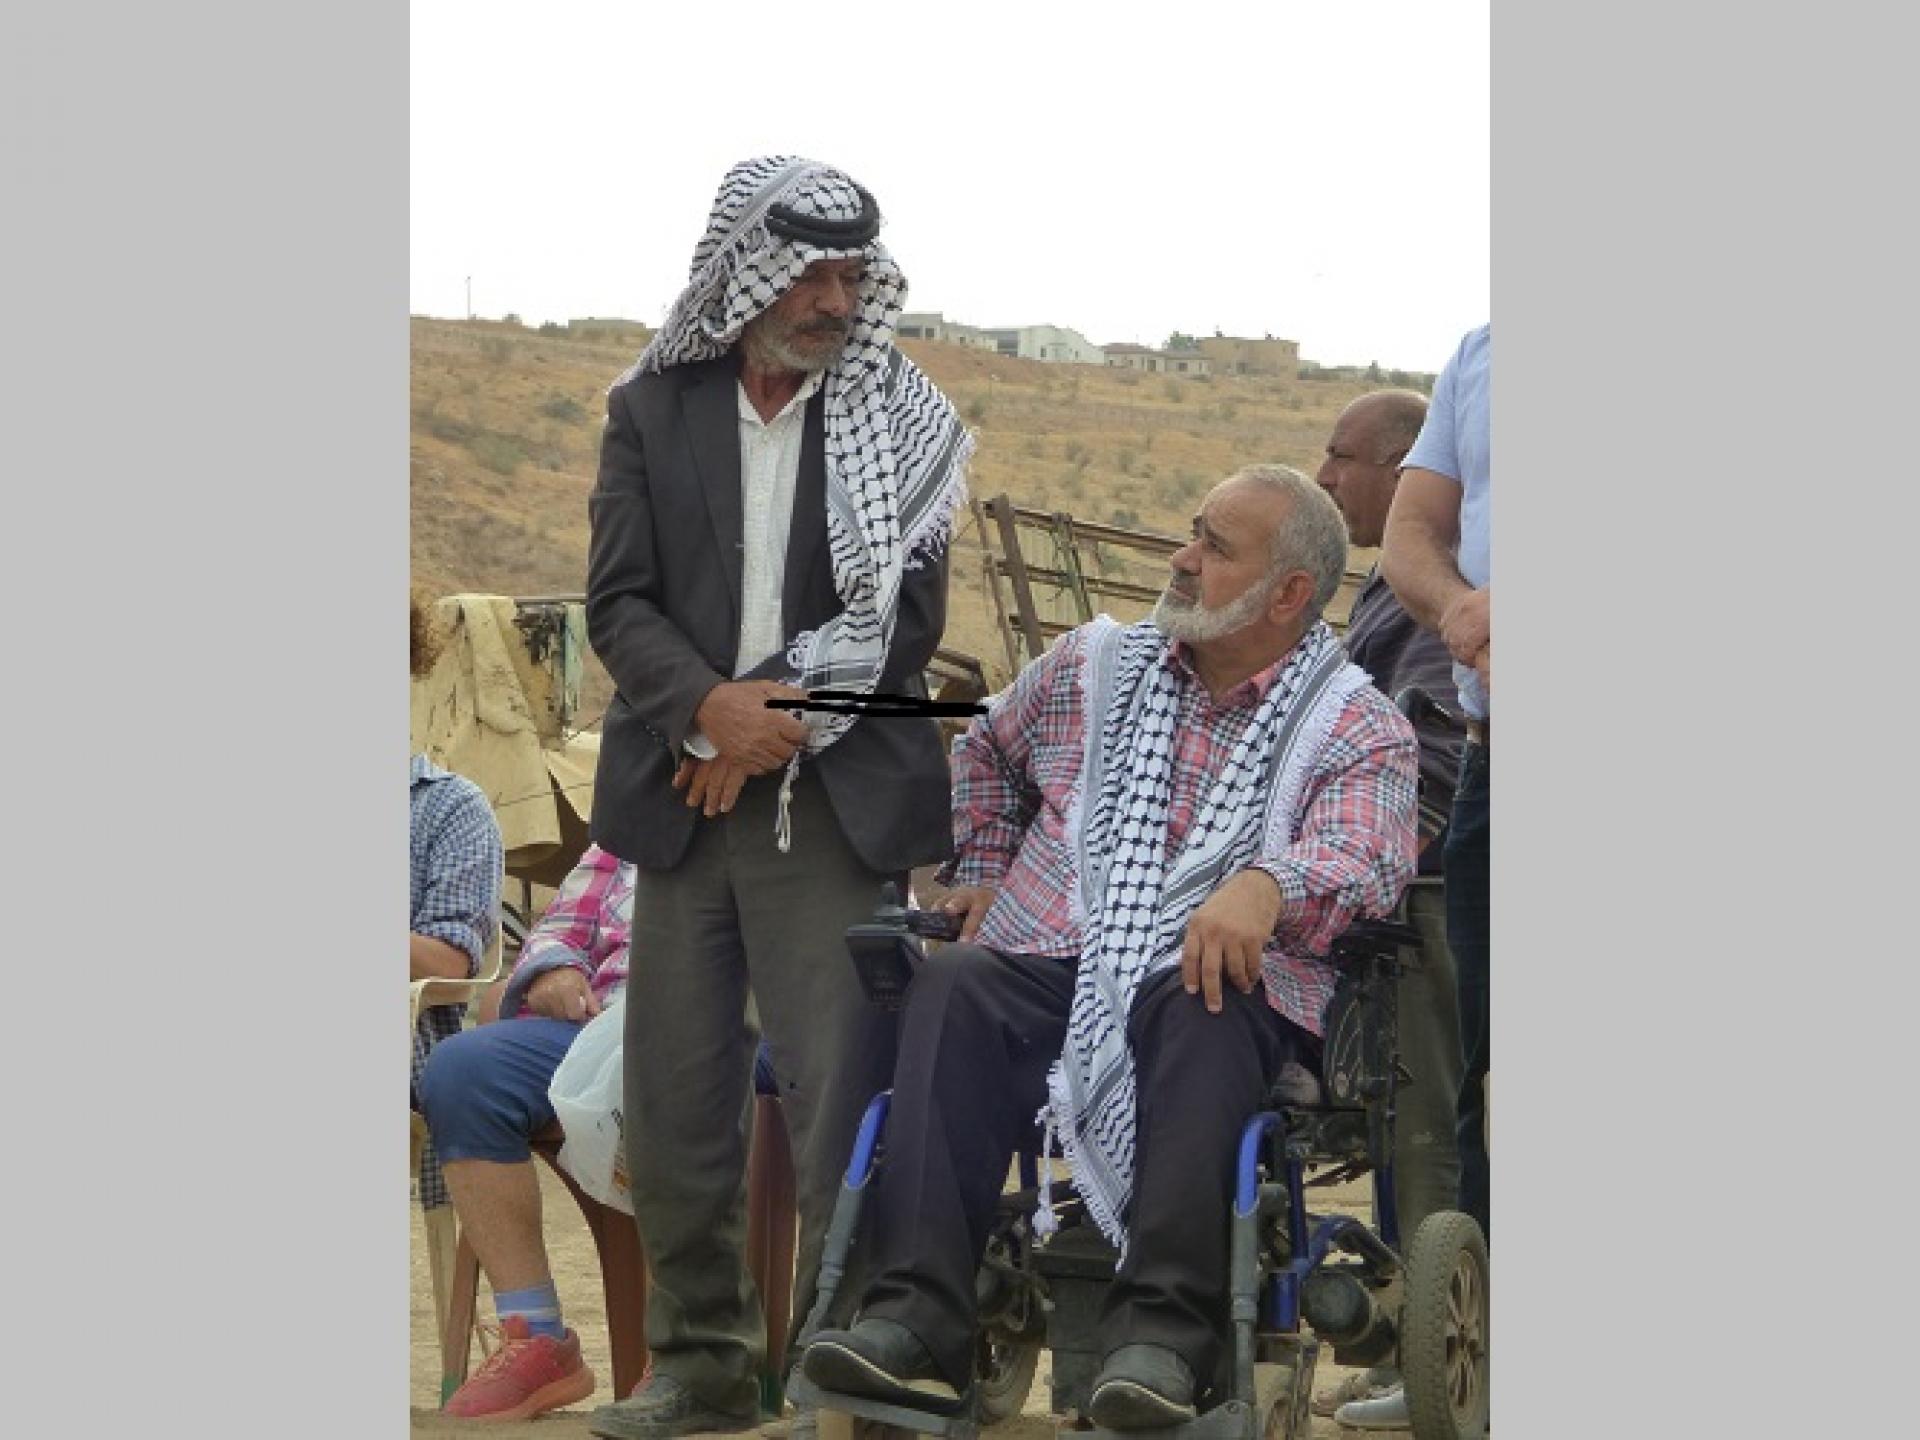 מנהיגי קהילה פלסטינים דיברו אתנו על דאגותיהם הכבדות. בראש הגבעה ברקע, התנחלות חדשה